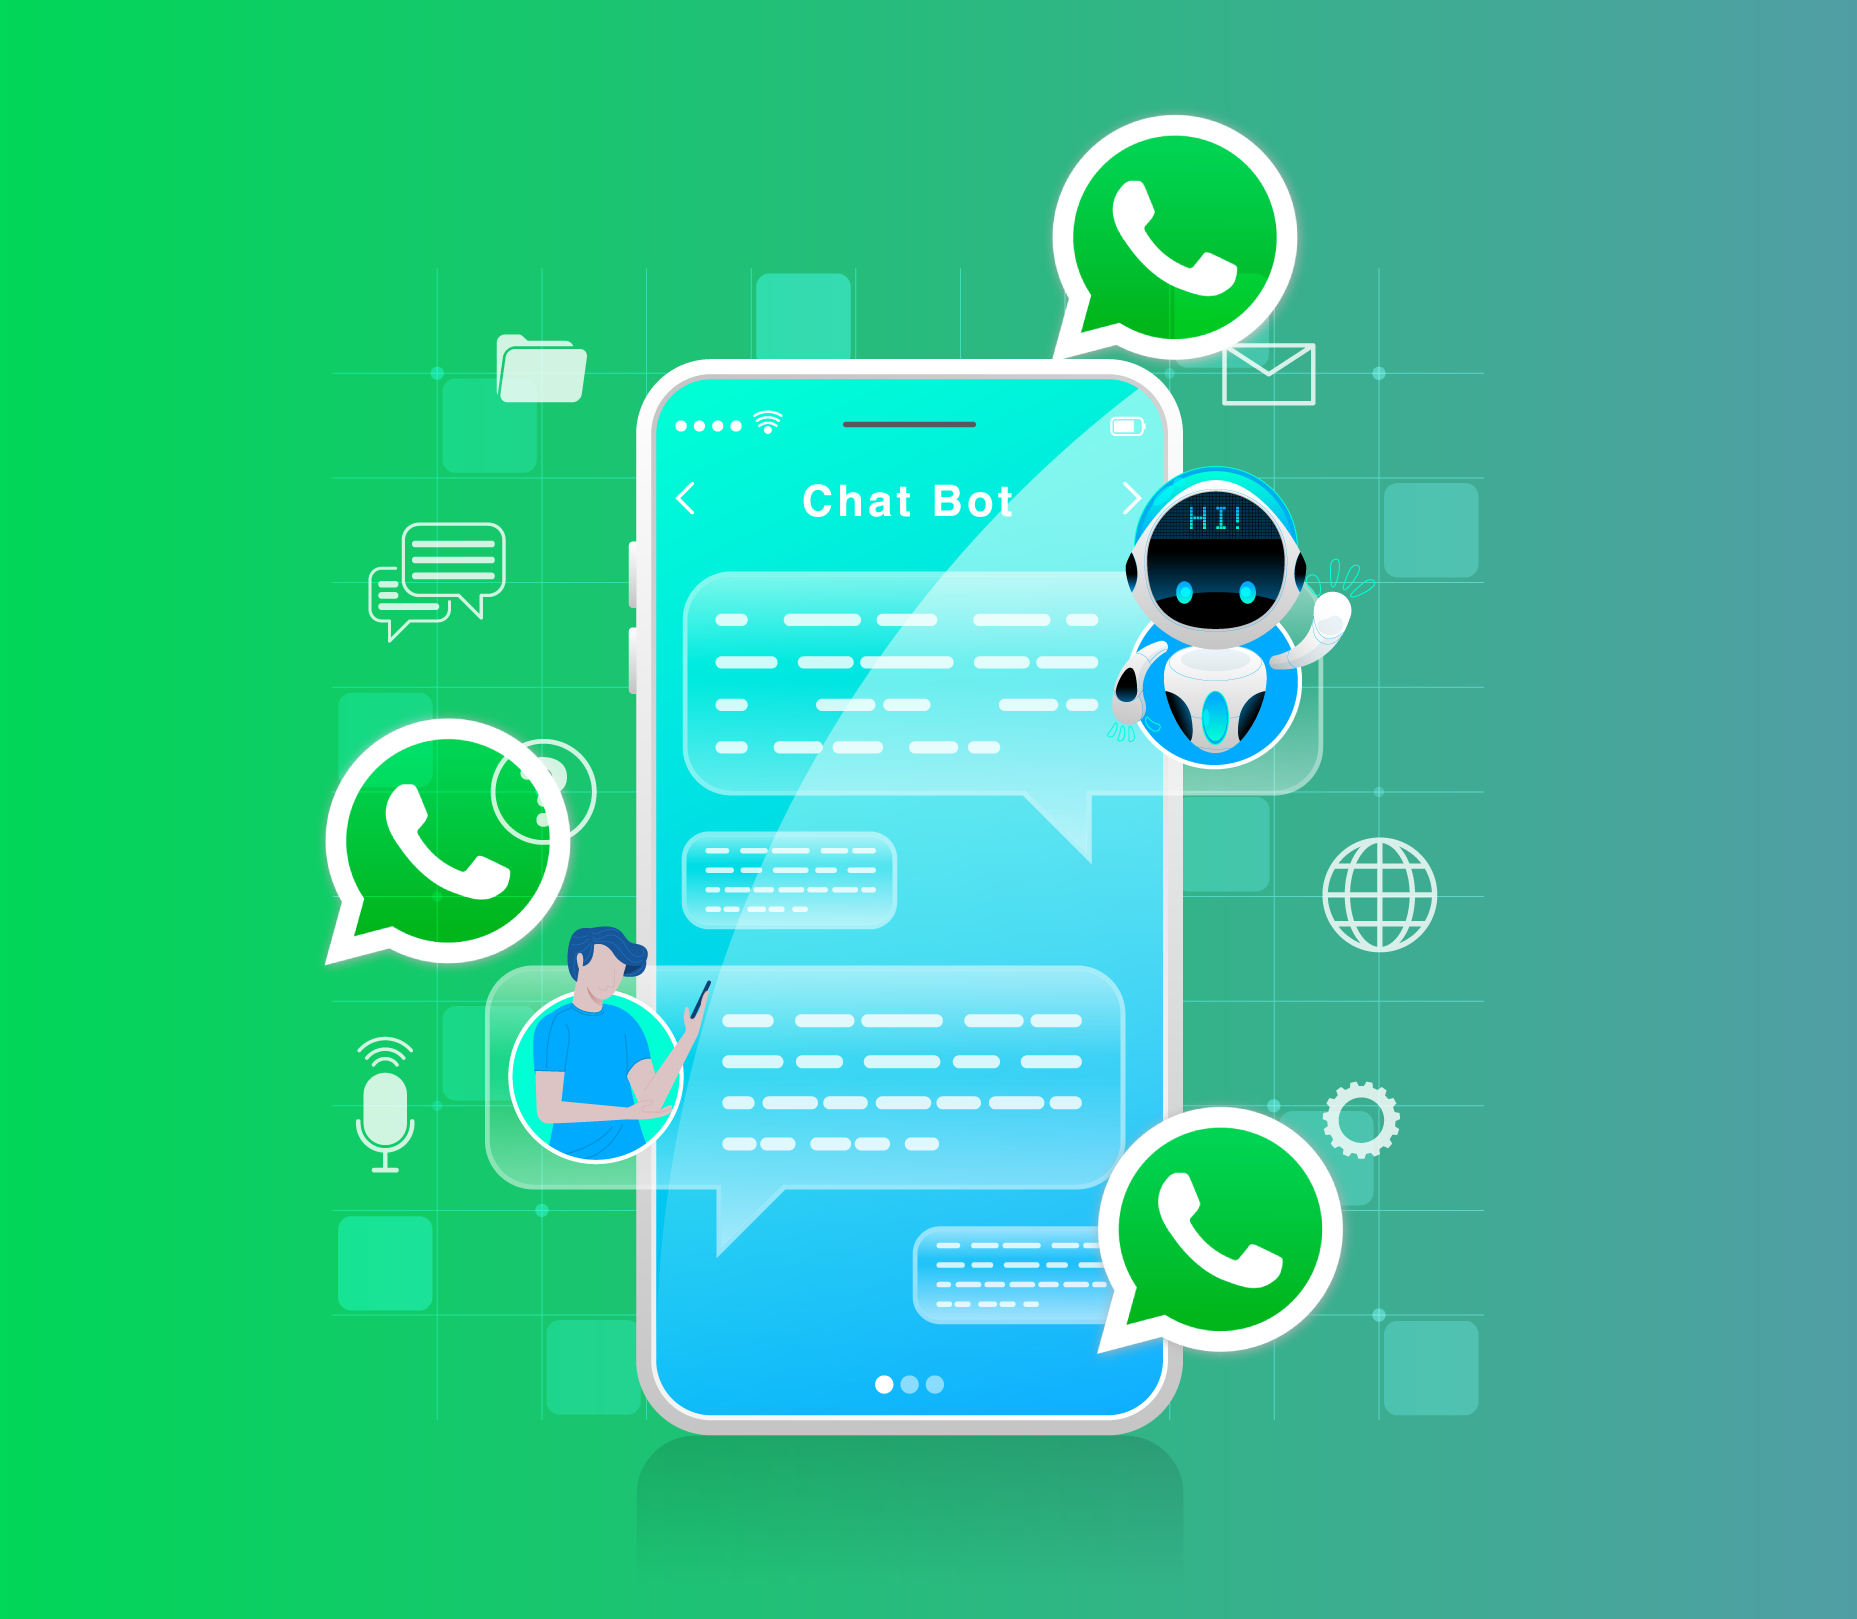 chatbot con inteligencia artificial integrado a whatsapp